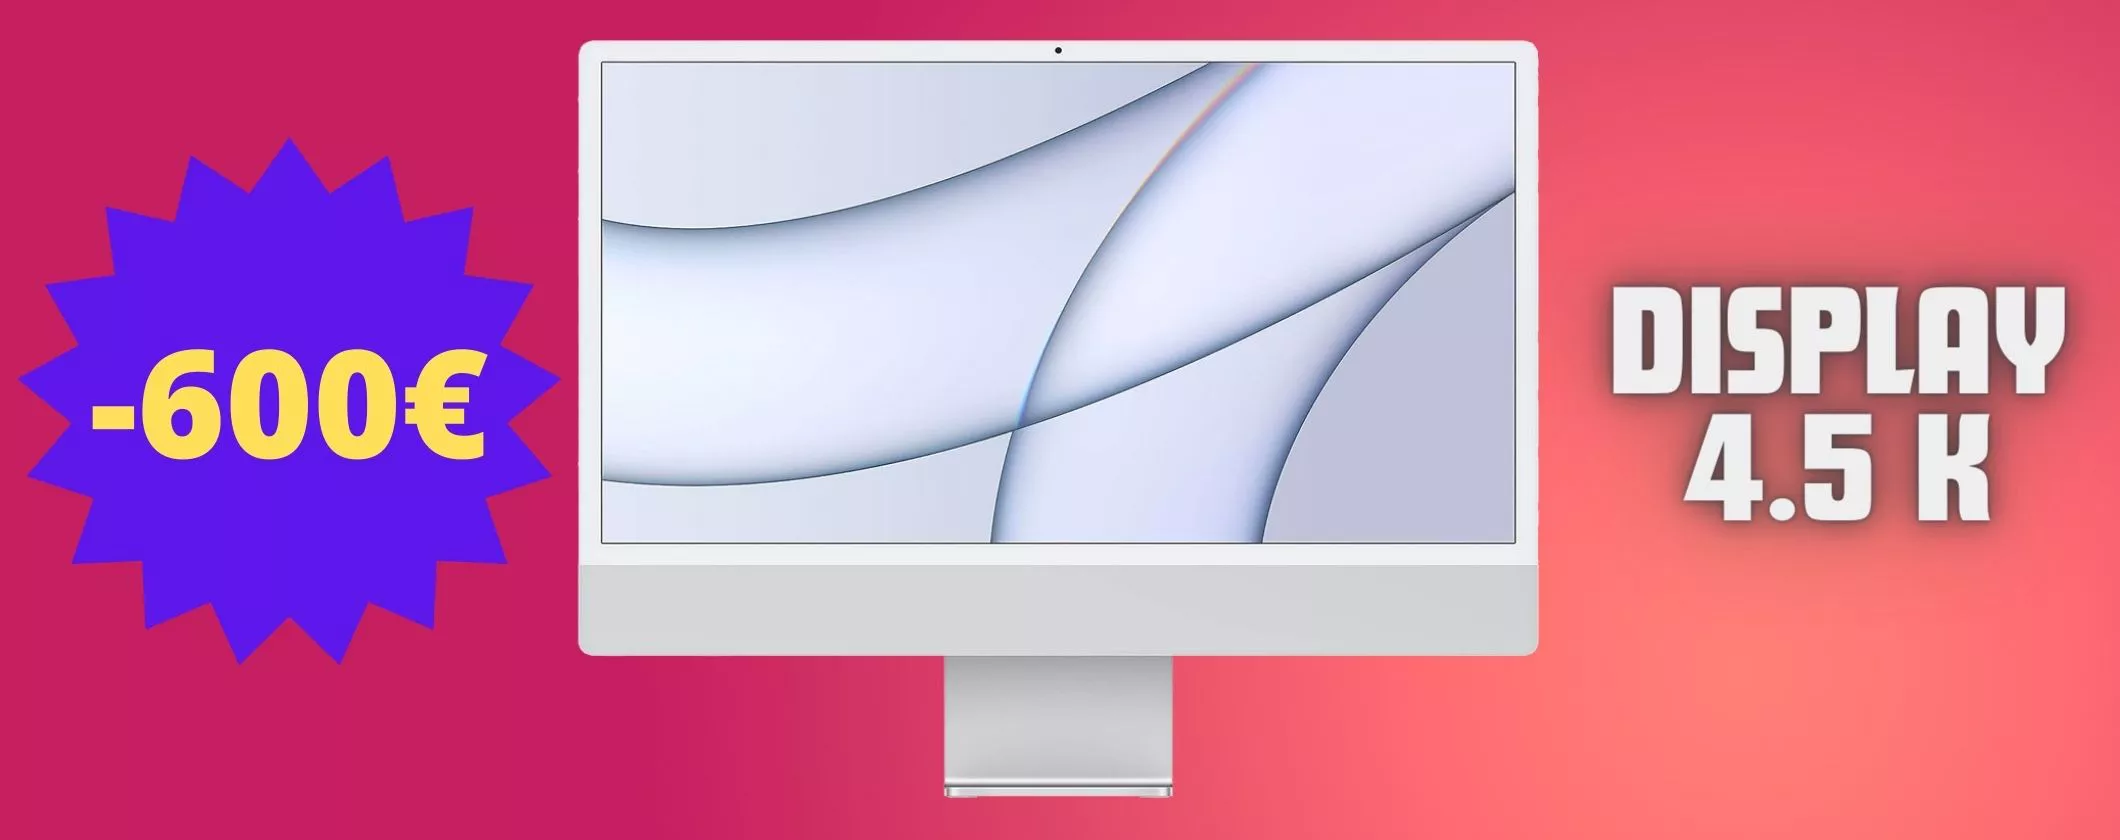 iMac M1 crolla a 600€ IN MENO: display 4.5K e SSD da 512 GB